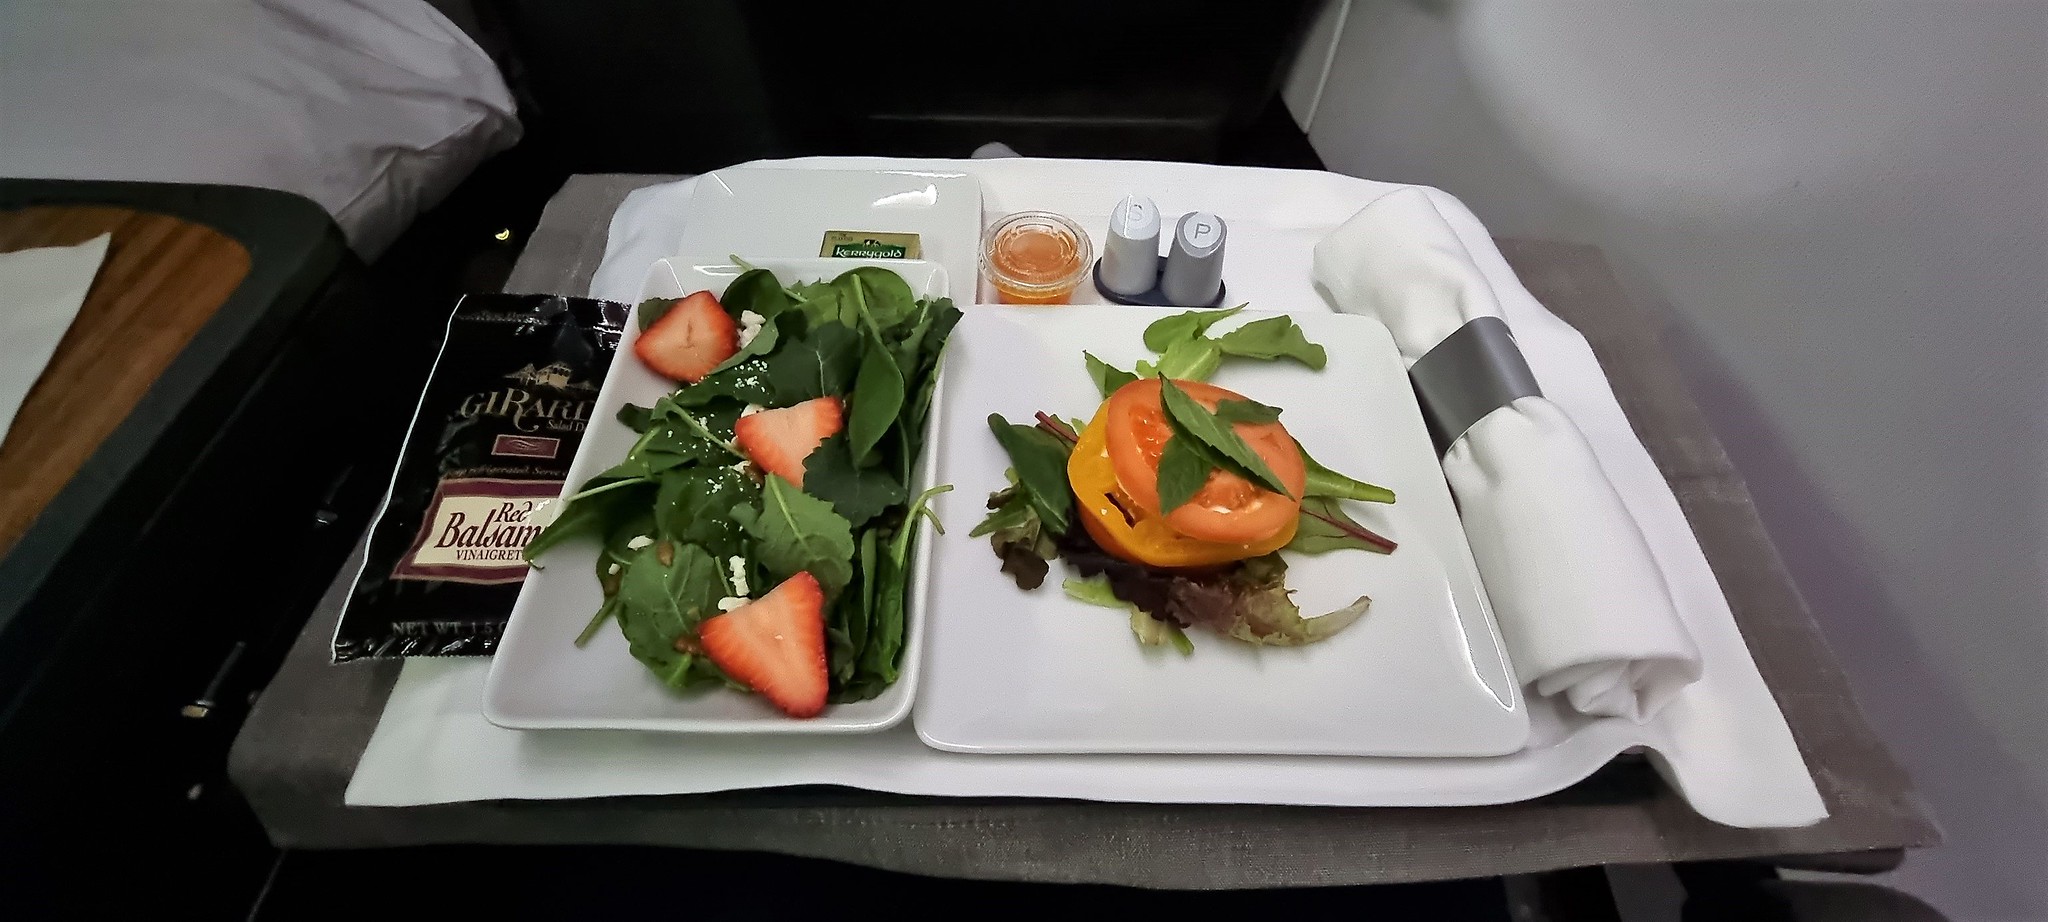 Salad as a starter on my AA flight to New York JFK